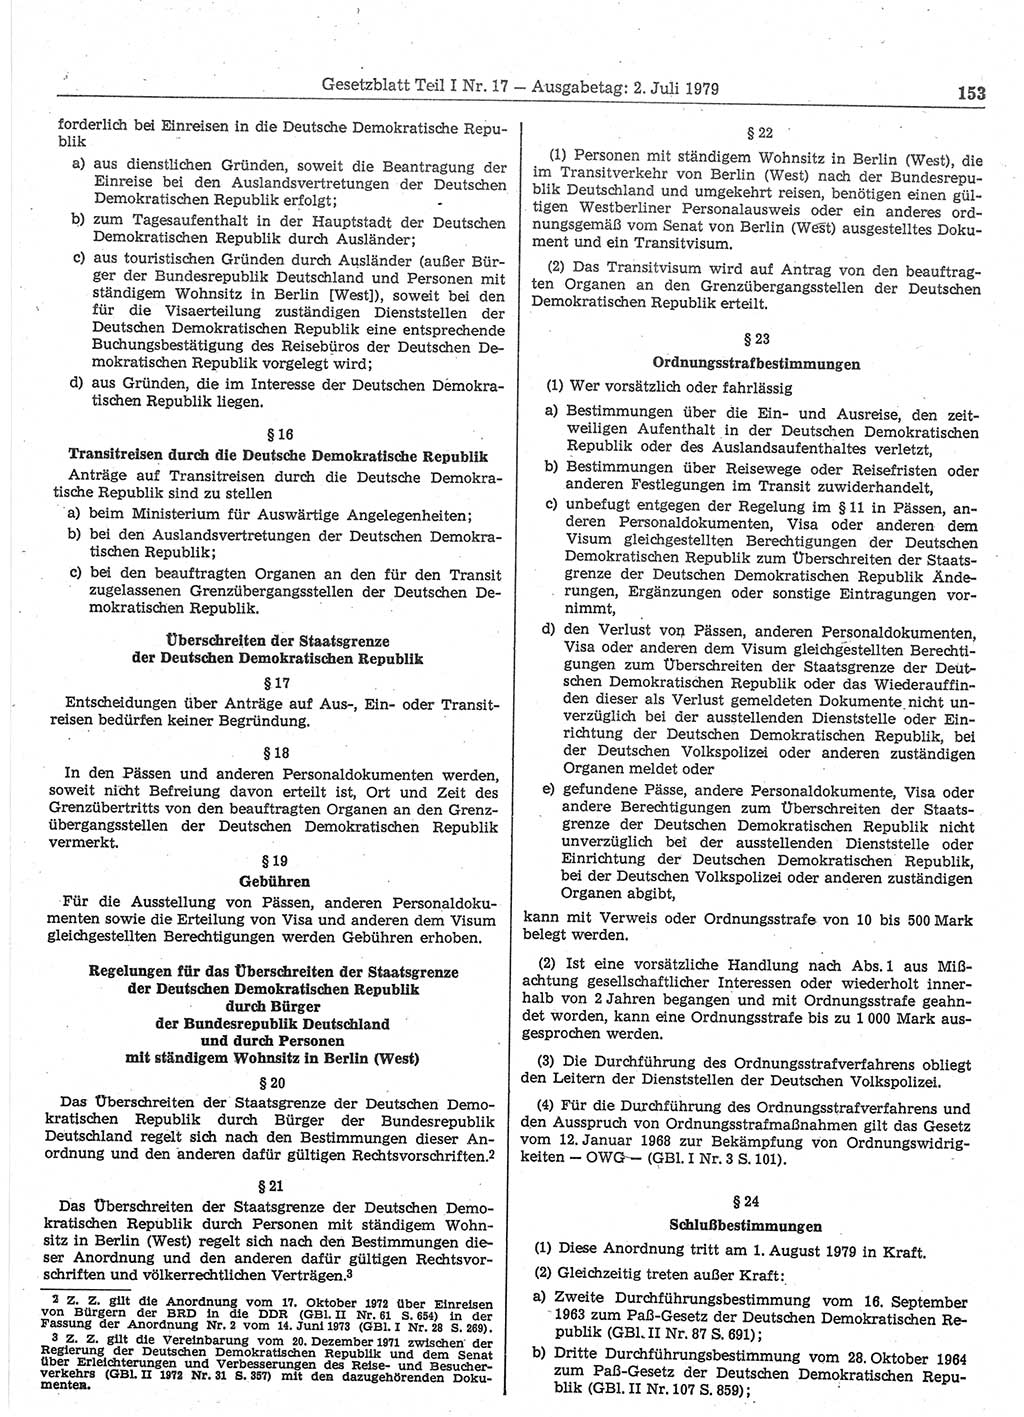 Gesetzblatt (GBl.) der Deutschen Demokratischen Republik (DDR) Teil Ⅰ 1979, Seite 153 (GBl. DDR Ⅰ 1979, S. 153)